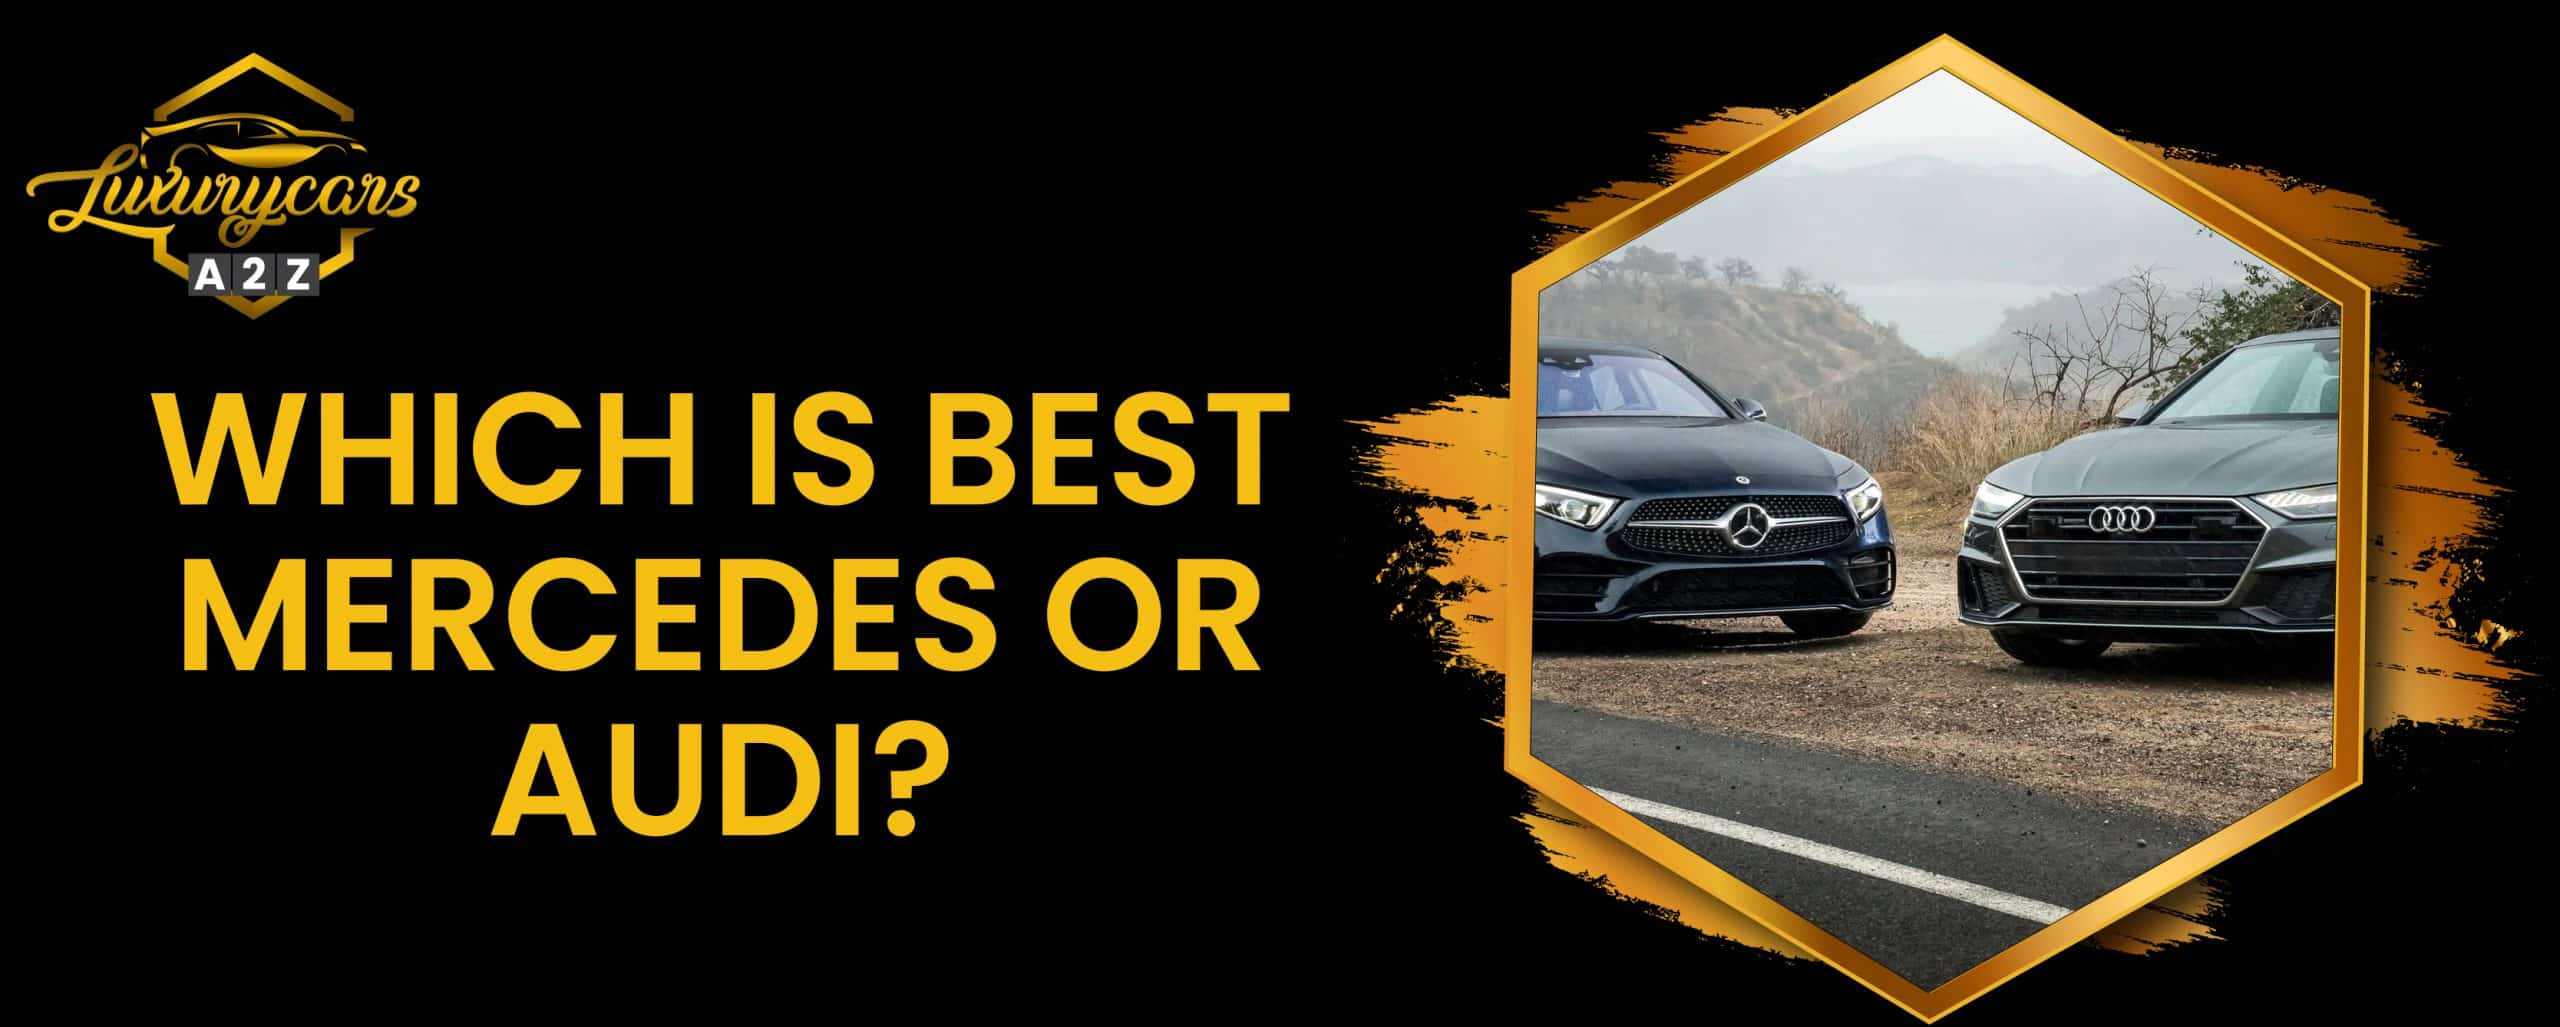 Qu'est-ce qui est le mieux, Mercedes ou Audi ?